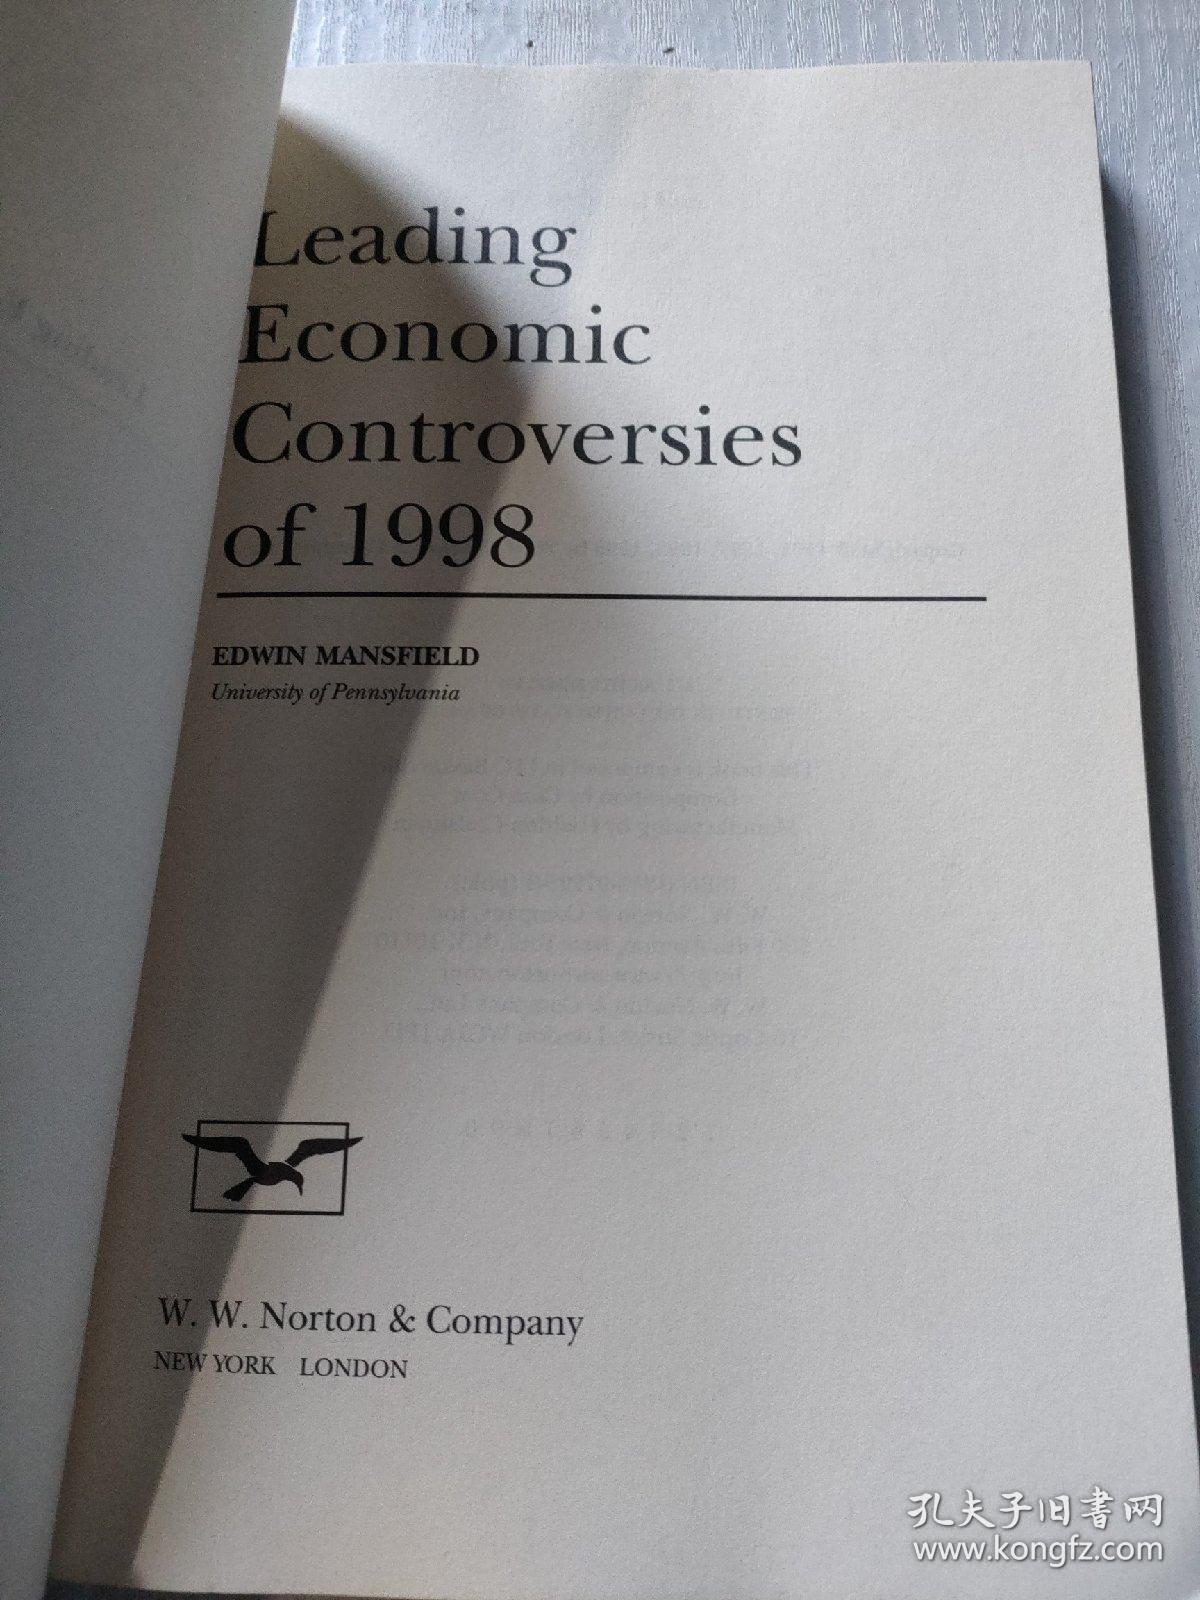 LEADING ECONOMIC CONTROVERSIES OF 1998